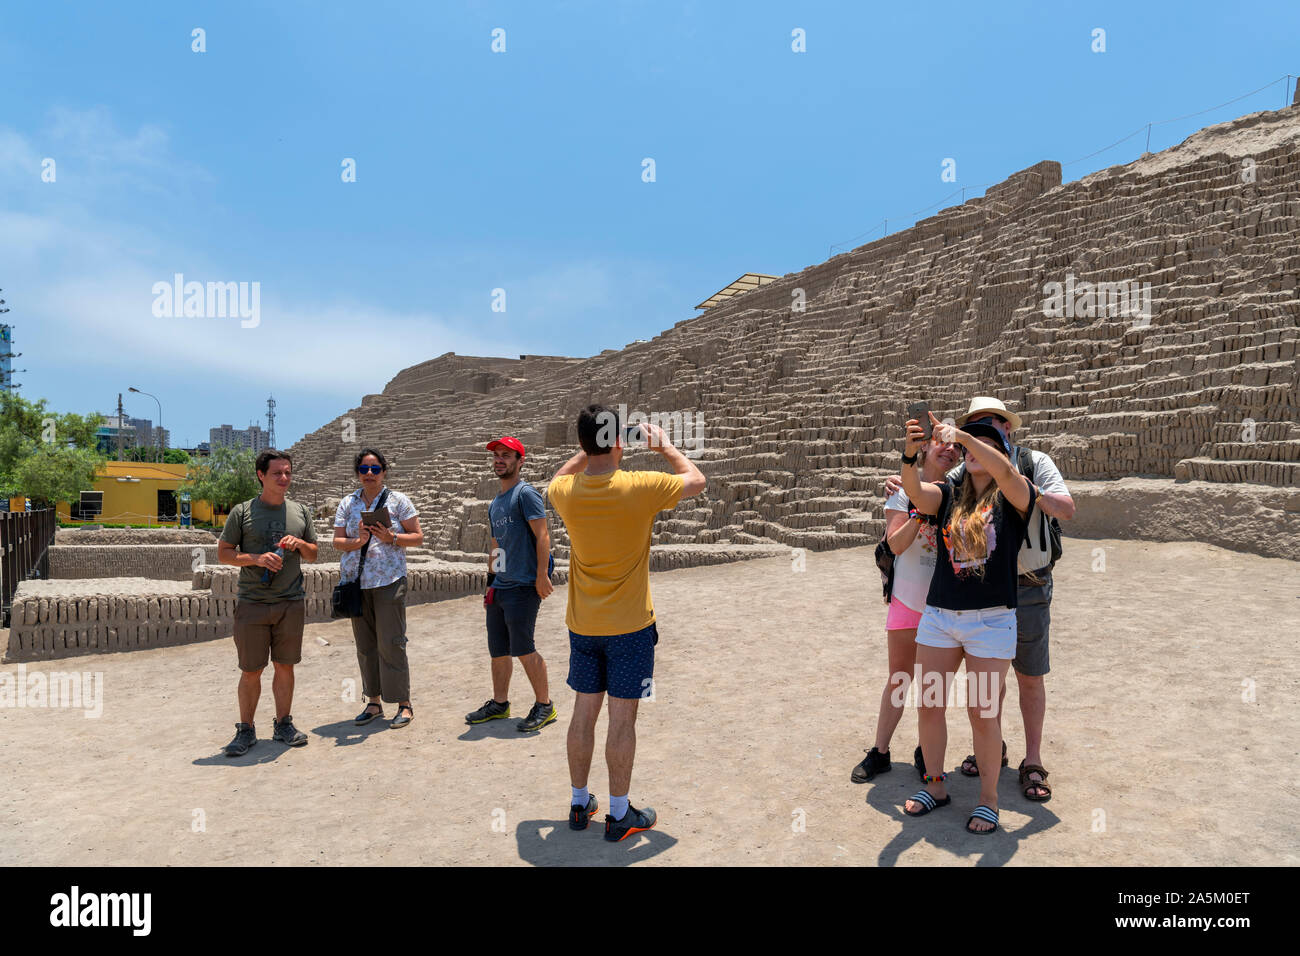 Los visitantes de tomar fotografías de las ruinas de Huaca Pucllana, una pirámide de adobe que data de alrededor del año 400 DC, Miraflores, Lima, Perú, América del Sur Foto de stock